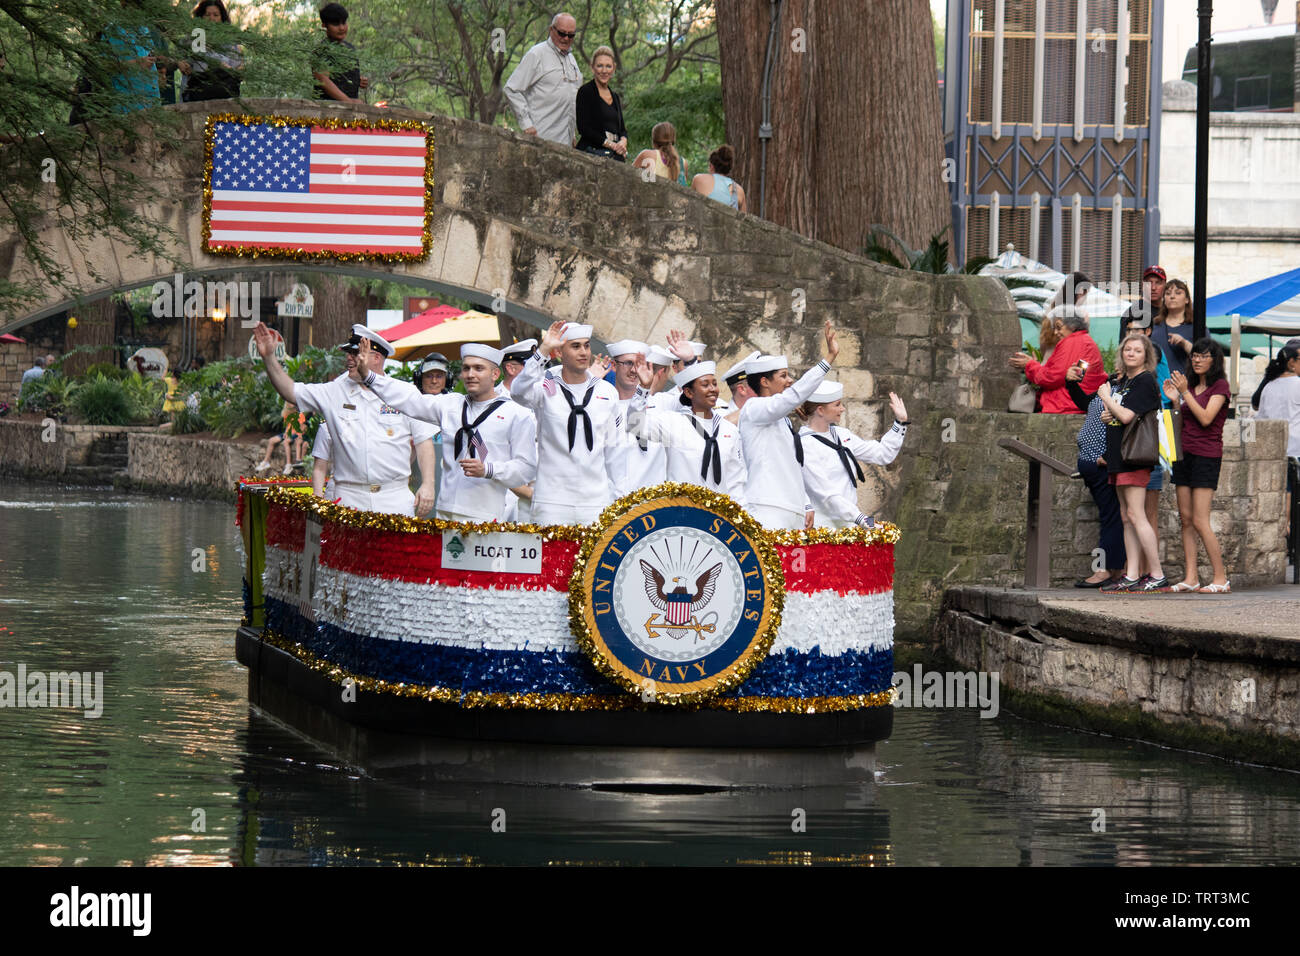 El desfile anual de servicios a veteranos teniendo lugar a lo largo del Paseo del Río en San Antonio, Texas, EE.UU. Foto de stock